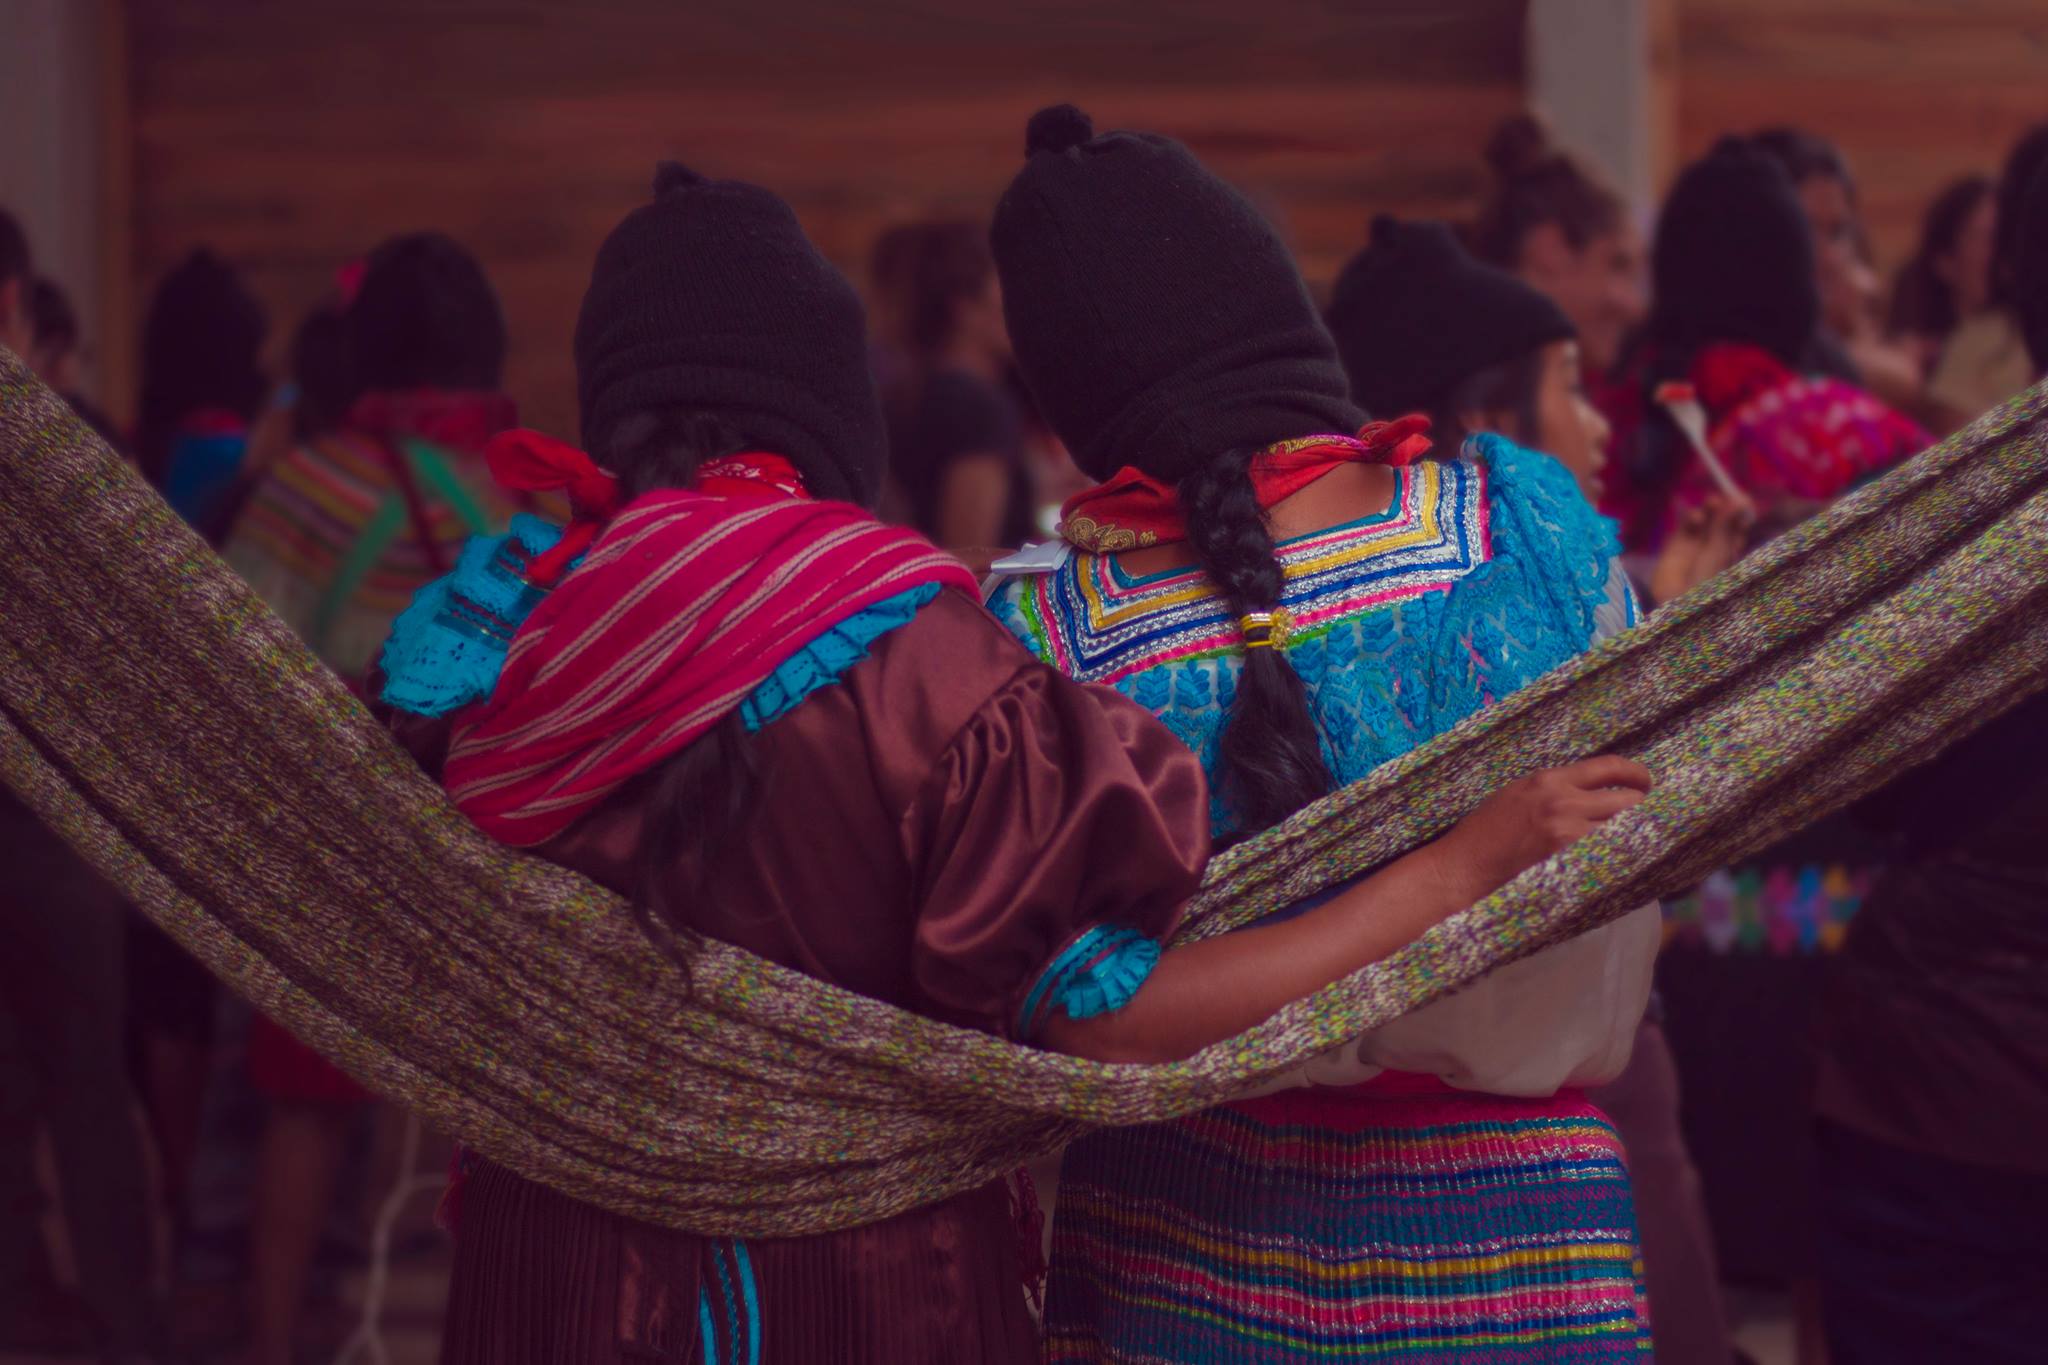 Dos mujeres se abrazan por la espalda mientras escuchan atentas hacia adelante. Visten sus trajes tradicionales